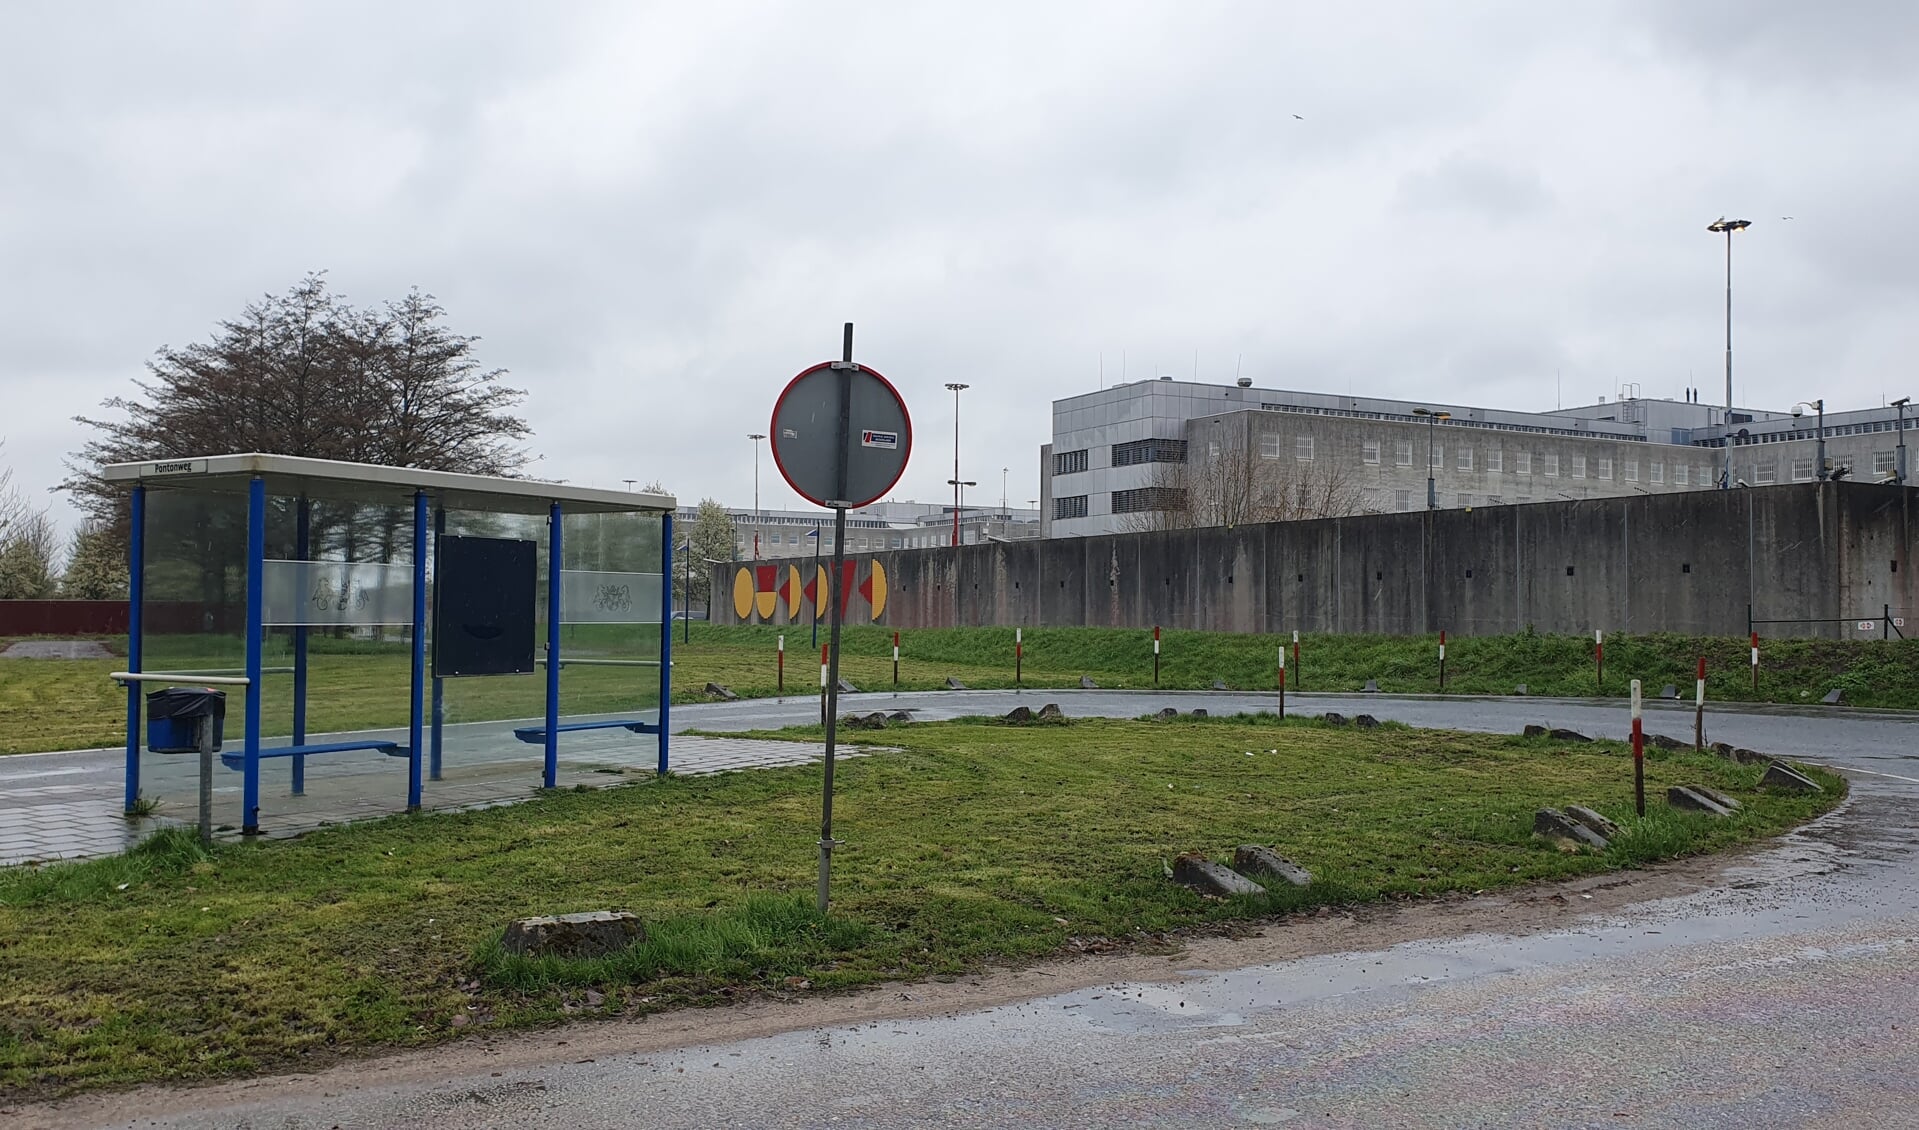 De raad wil geen veiligelanders in de voormalige gevangenis. (Foto: Almere DEZE WEEK)